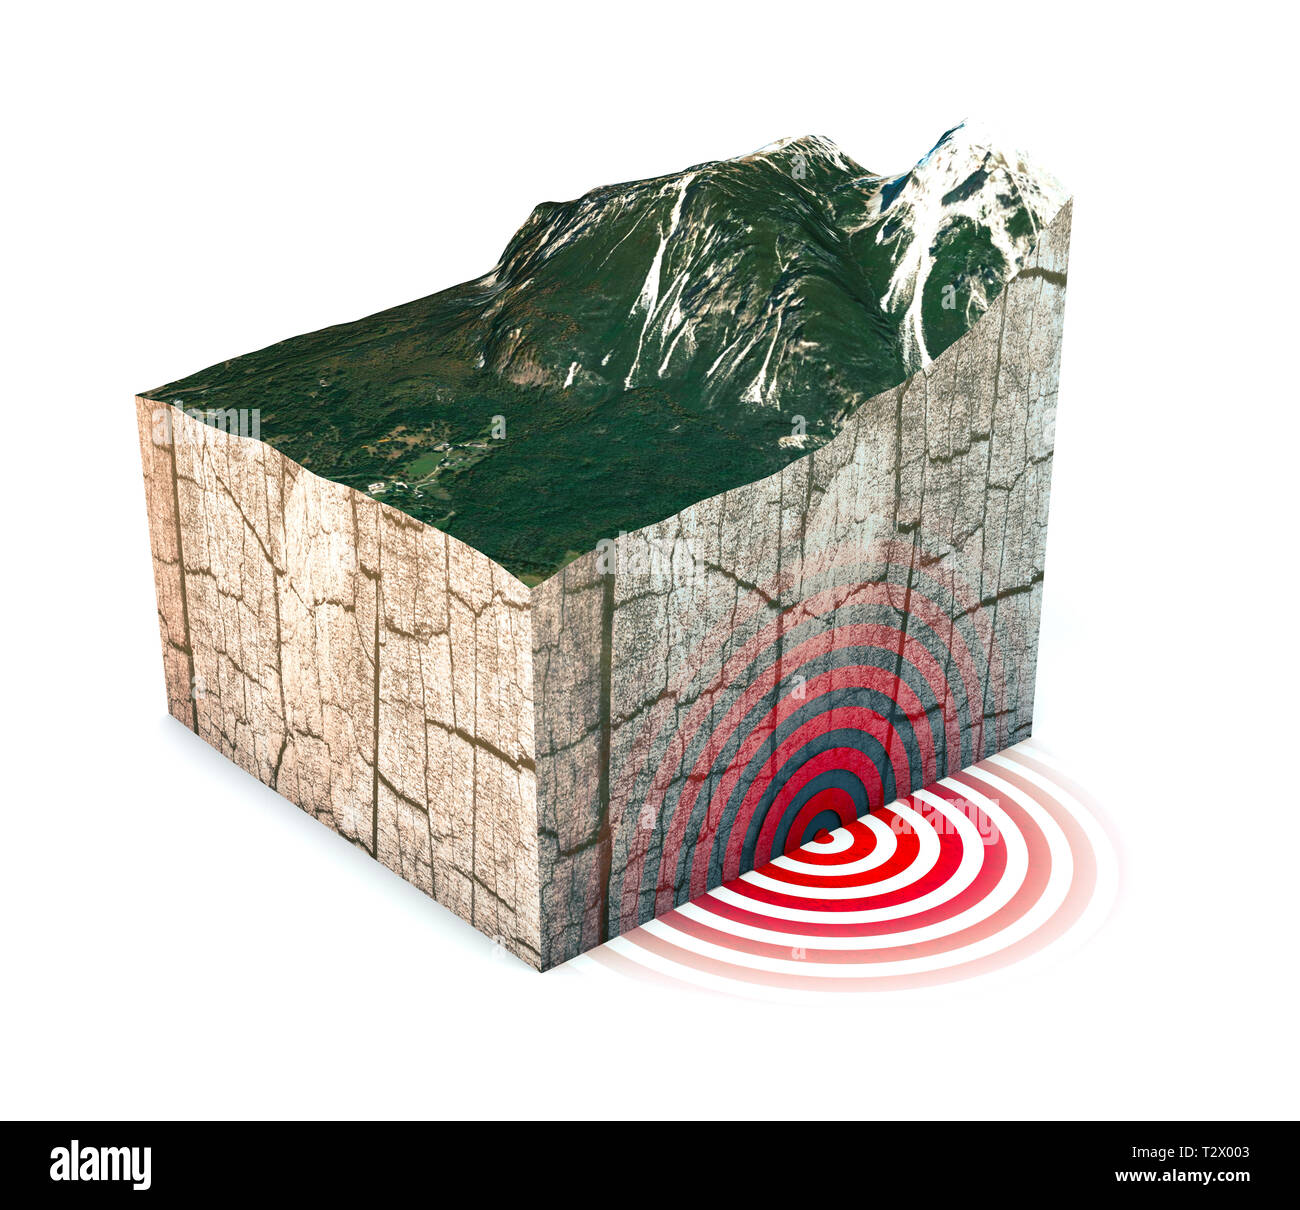 Terremoto sezione di massa, shake, elementi di questa immagine sono arredate dalla NASA. Sezione di terra colpita da un terremoto di forte magnitudo. Il rendering 3D Foto Stock